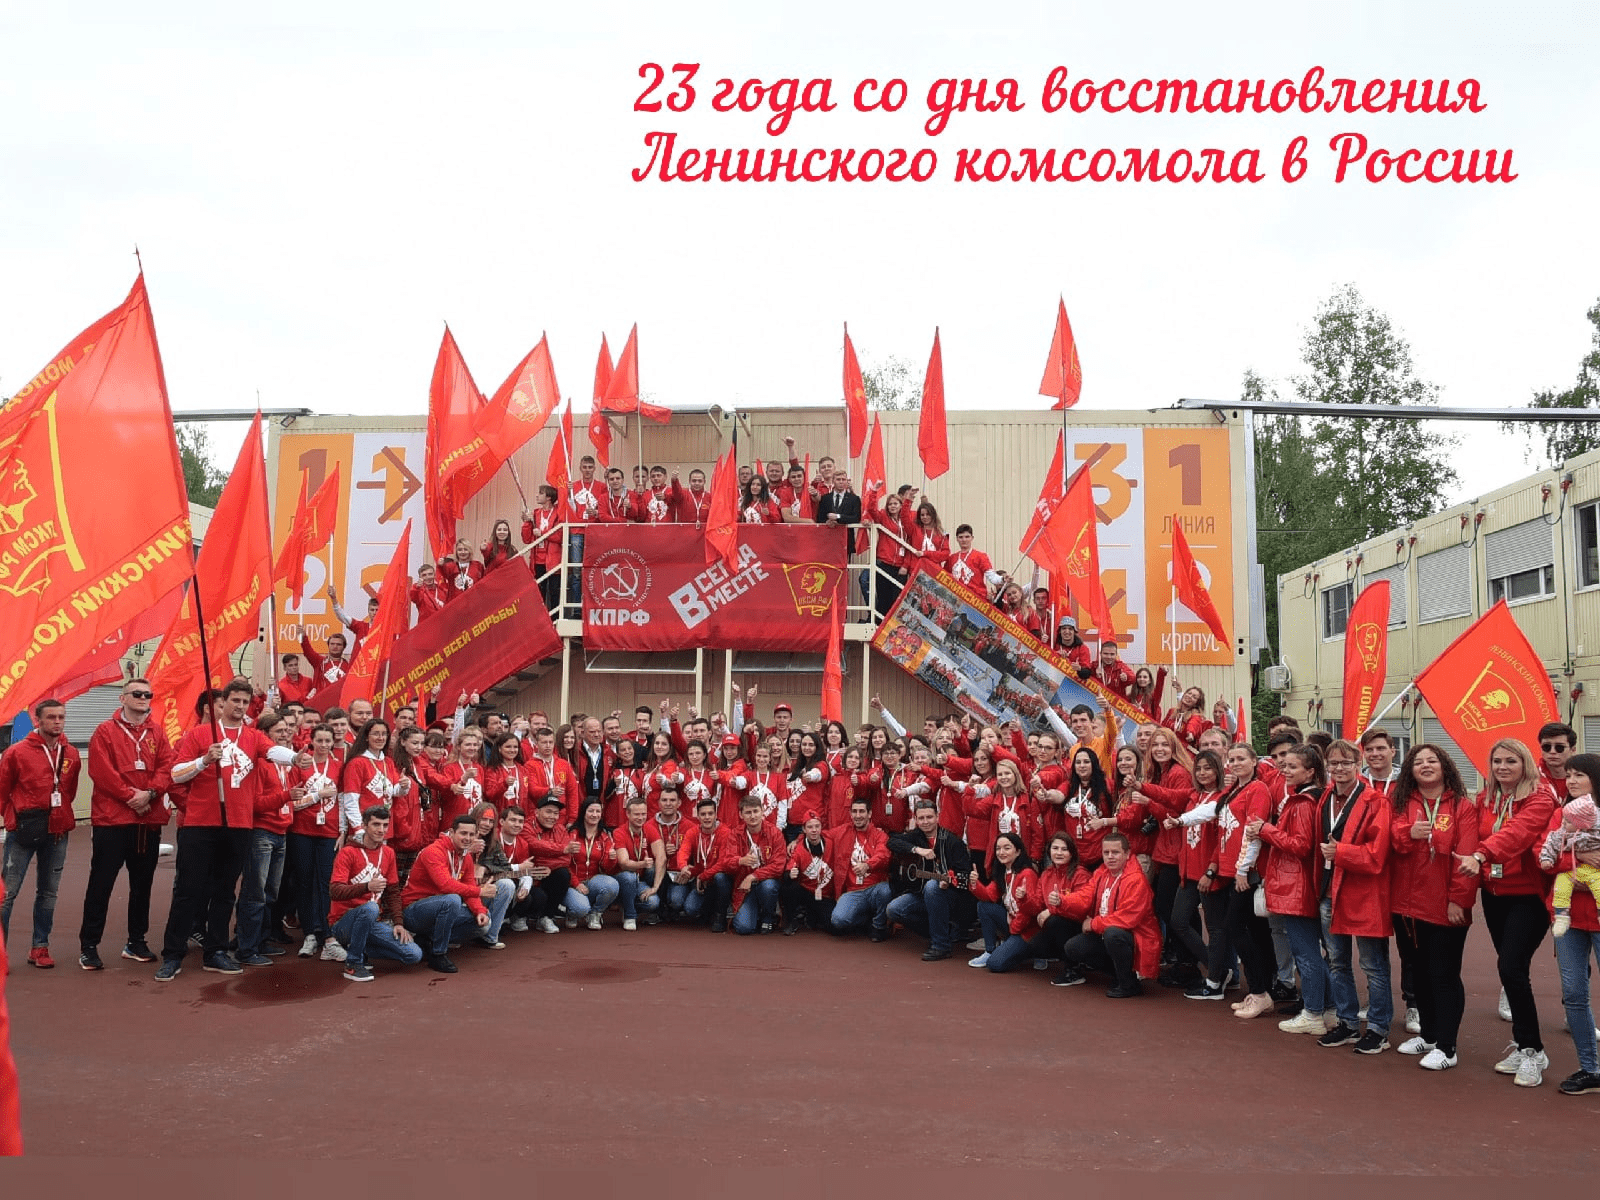 Ленинский Коммунистический Союз молодёжи РФ (ЛКСМ РФ)